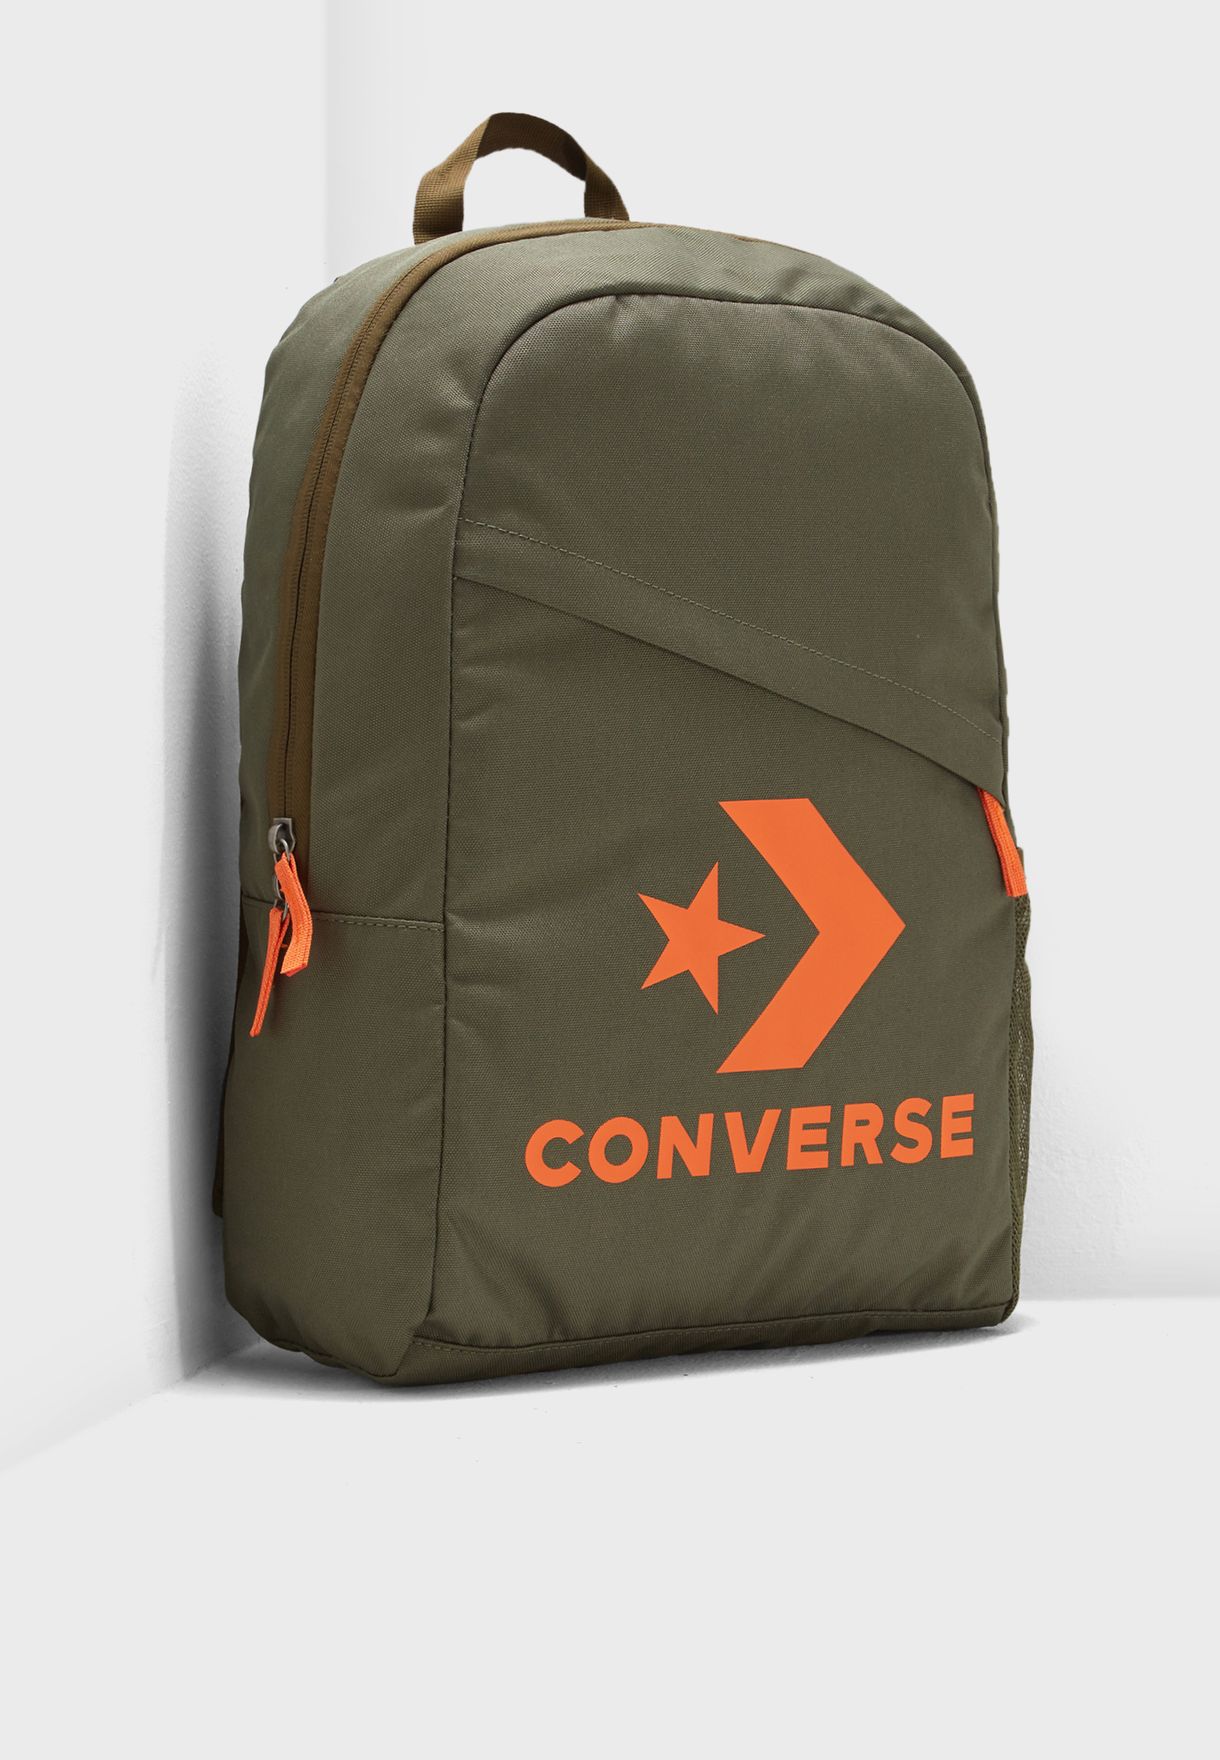 converse suitcase